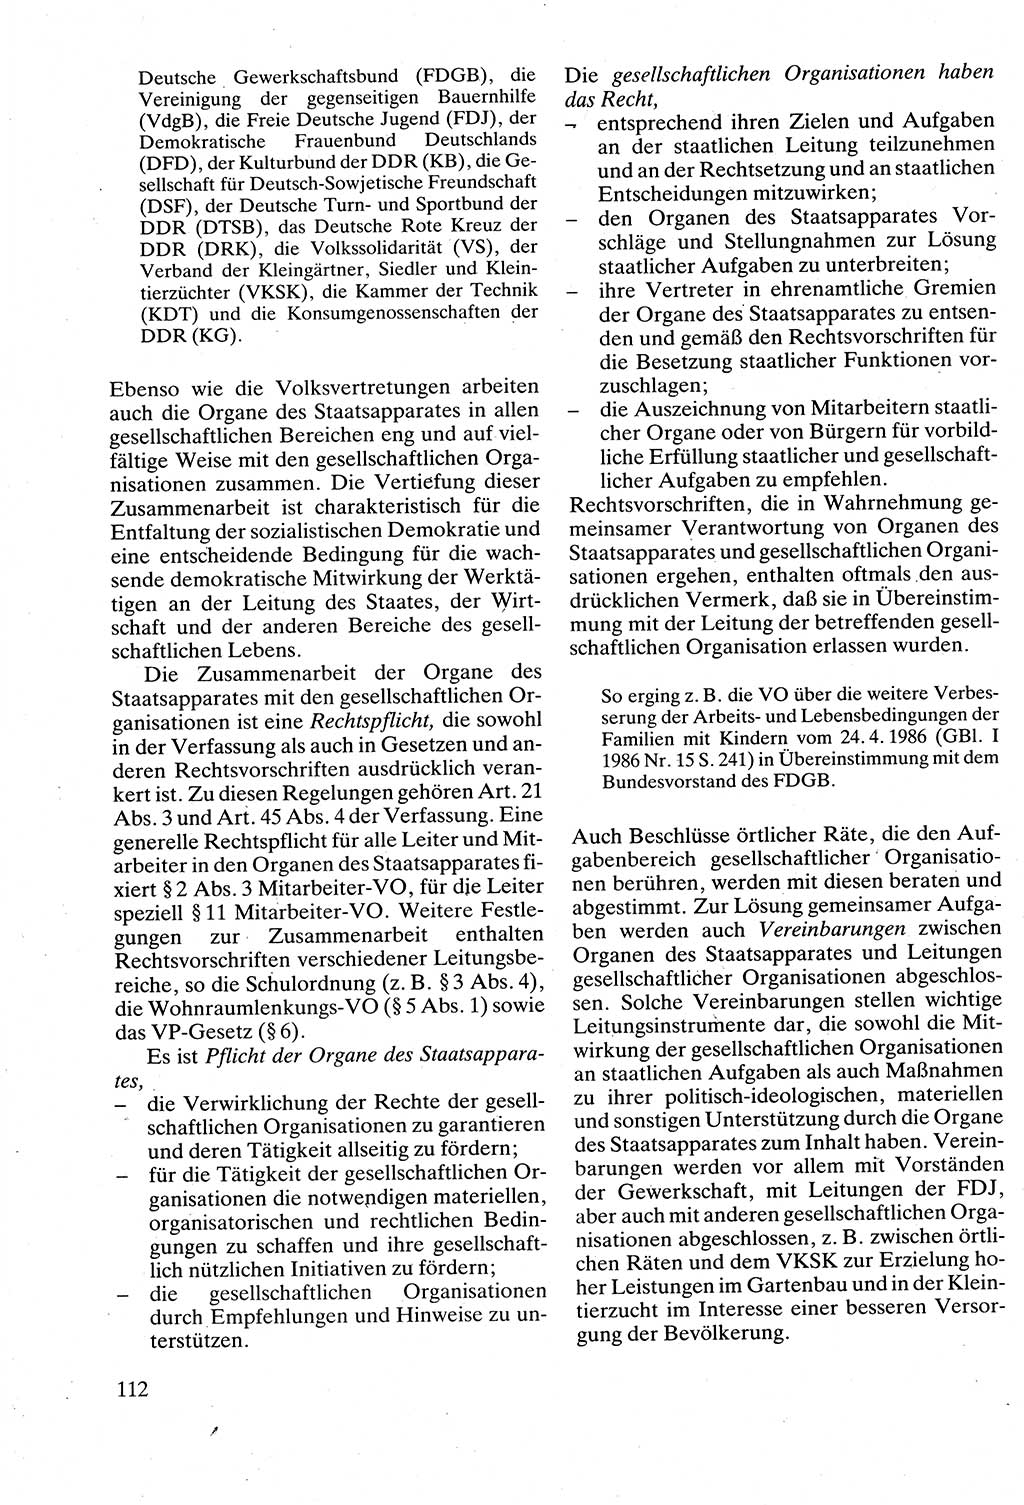 Verwaltungsrecht [Deutsche Demokratische Republik (DDR)], Lehrbuch 1988, Seite 112 (Verw.-R. DDR Lb. 1988, S. 112)